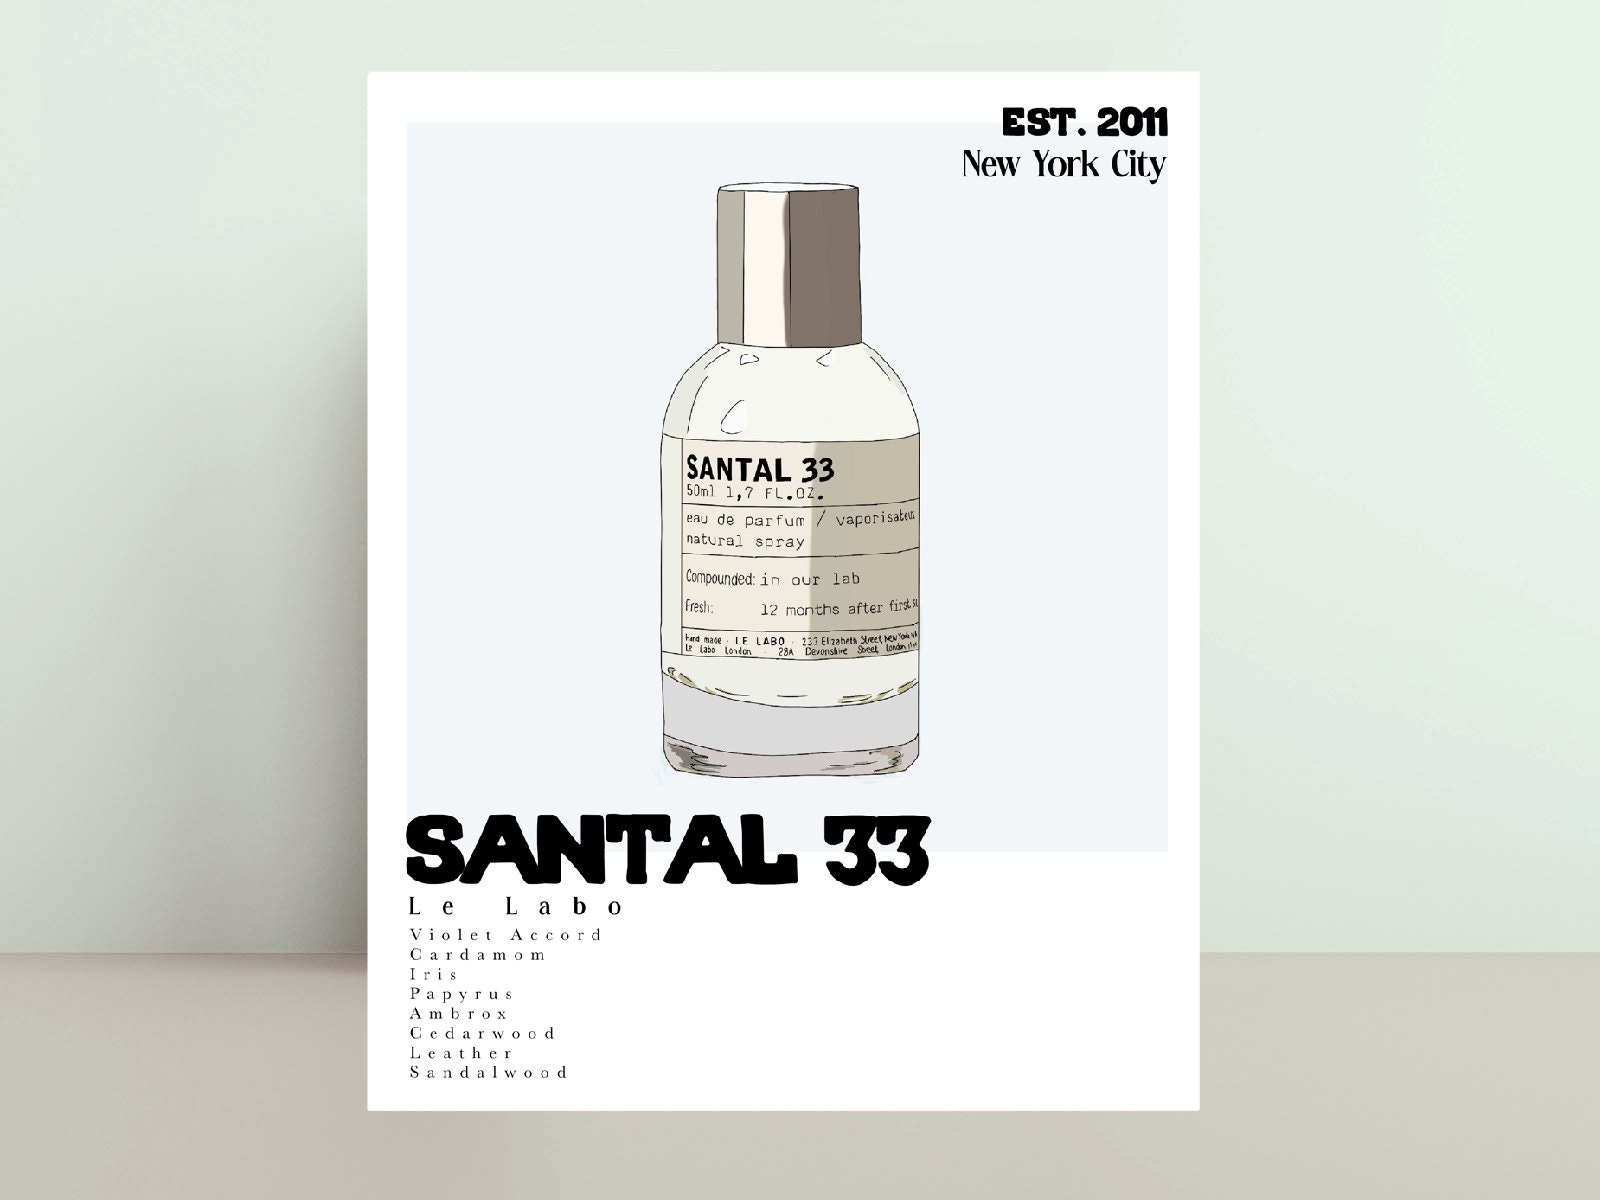 Sesneslabs Santal, Luxury Sandalwood Essential Oil Blend for Aroma